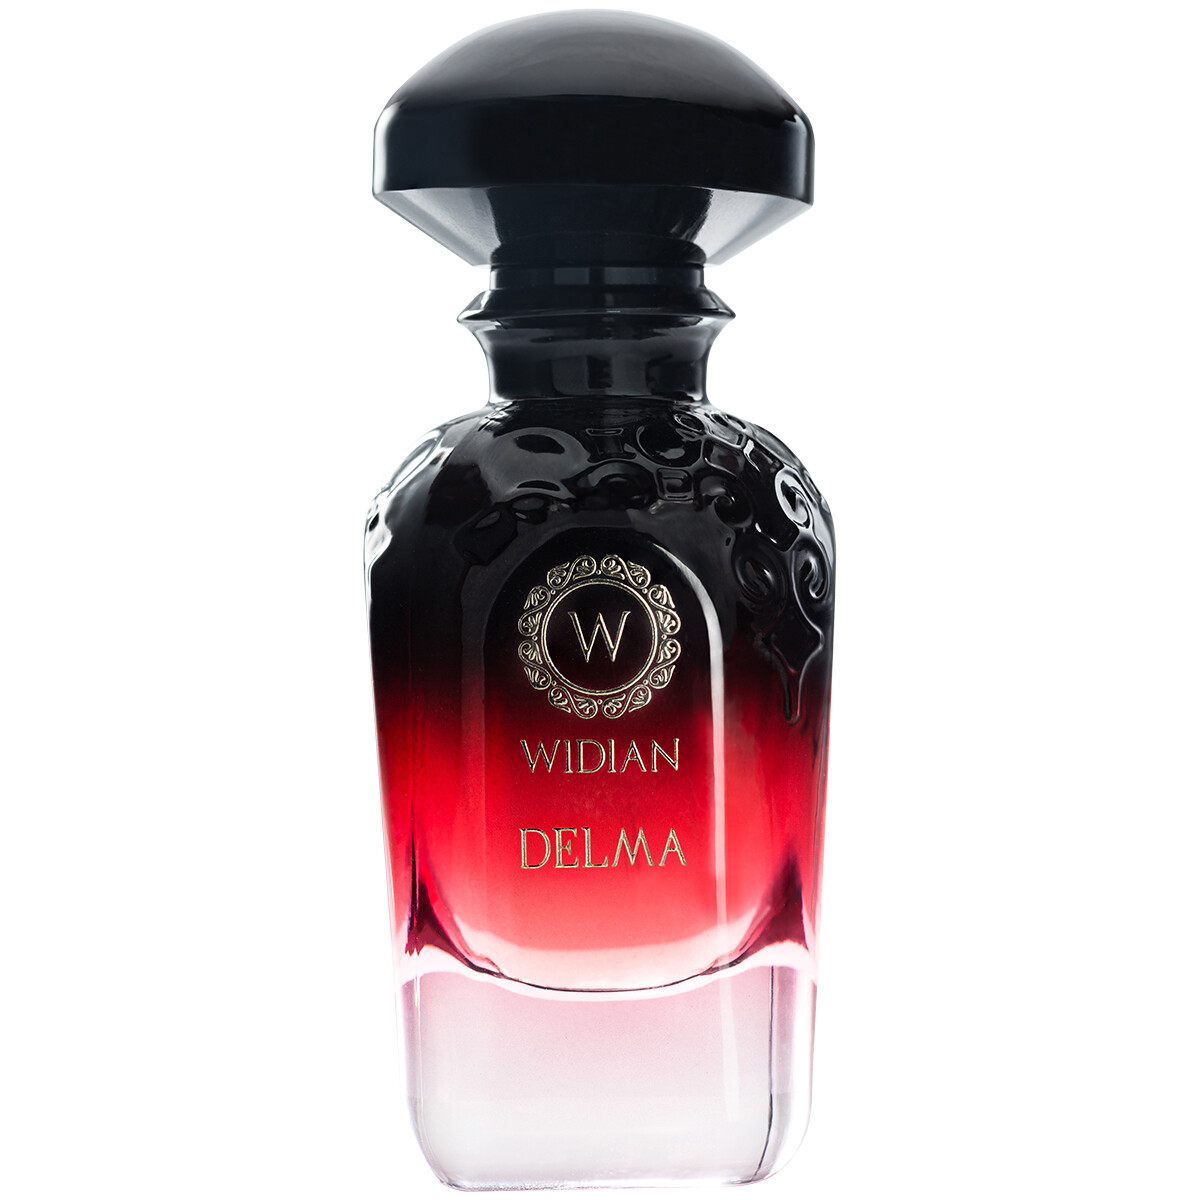 Luxus Parfum WIDIAN Delma Parfum 50ml kaufen